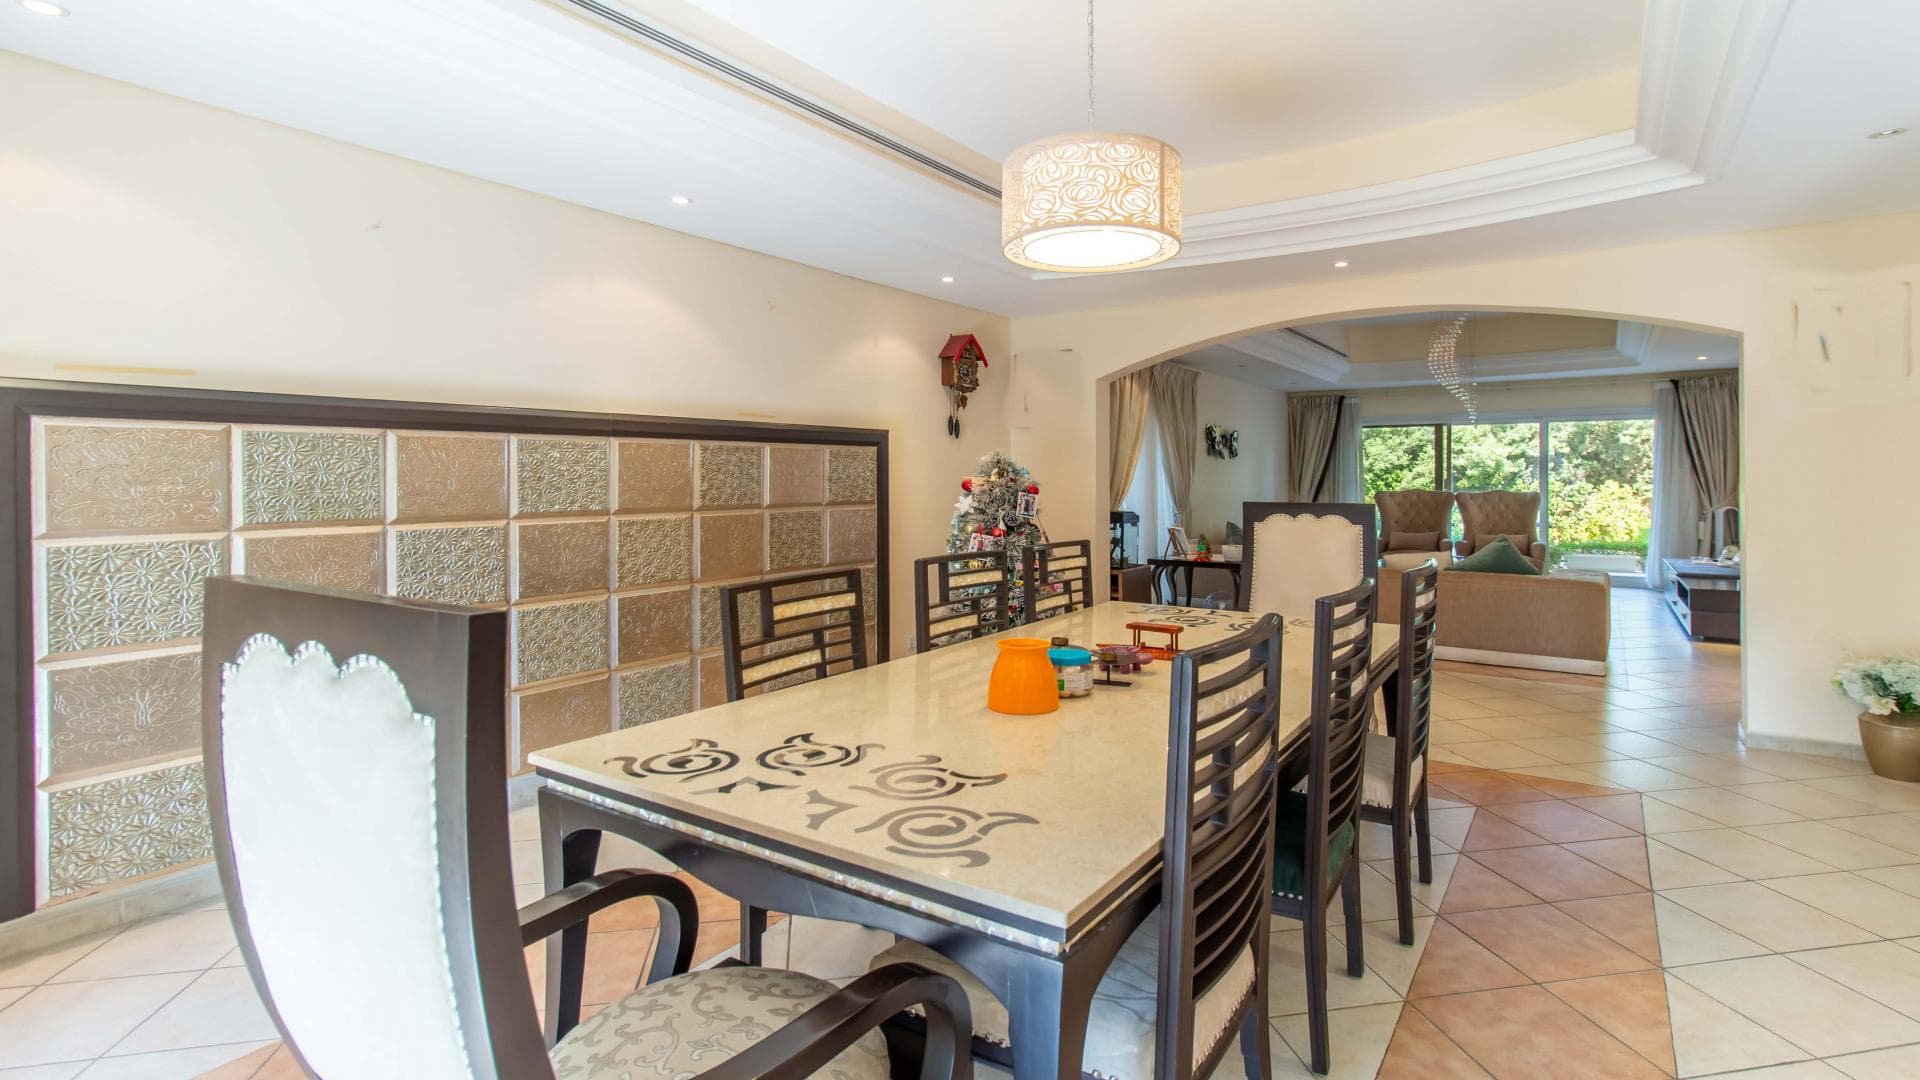 5 Bedroom Villa For Rent Al Thamam 36 Lp37870 32332162a1463400.jpg